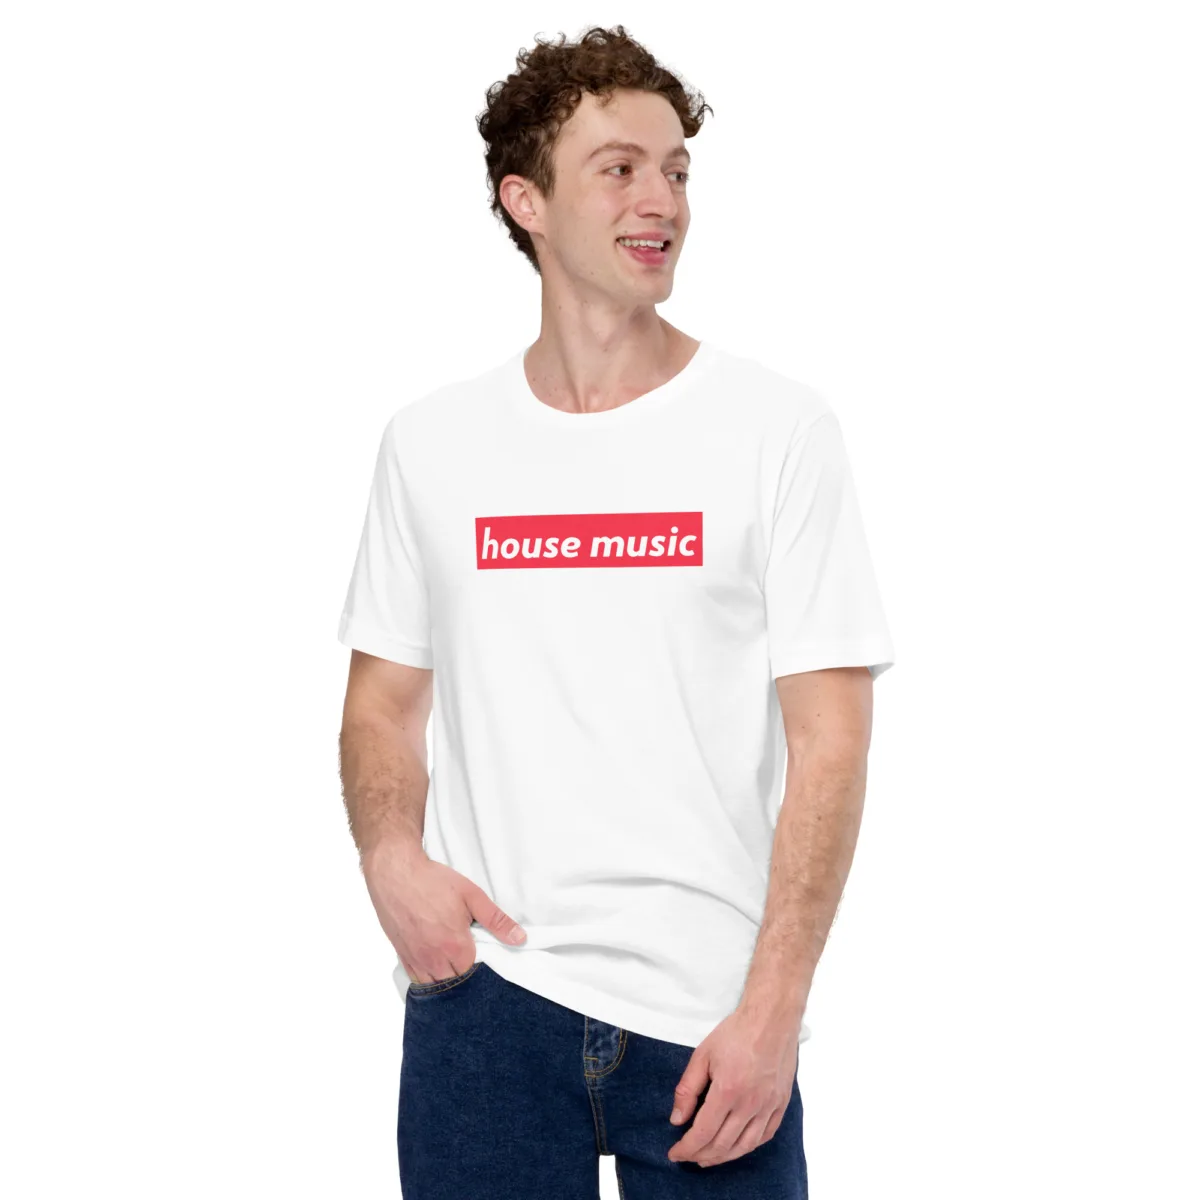 Camiseta Design Anime Preta  Camiseta Masculina Night Addict